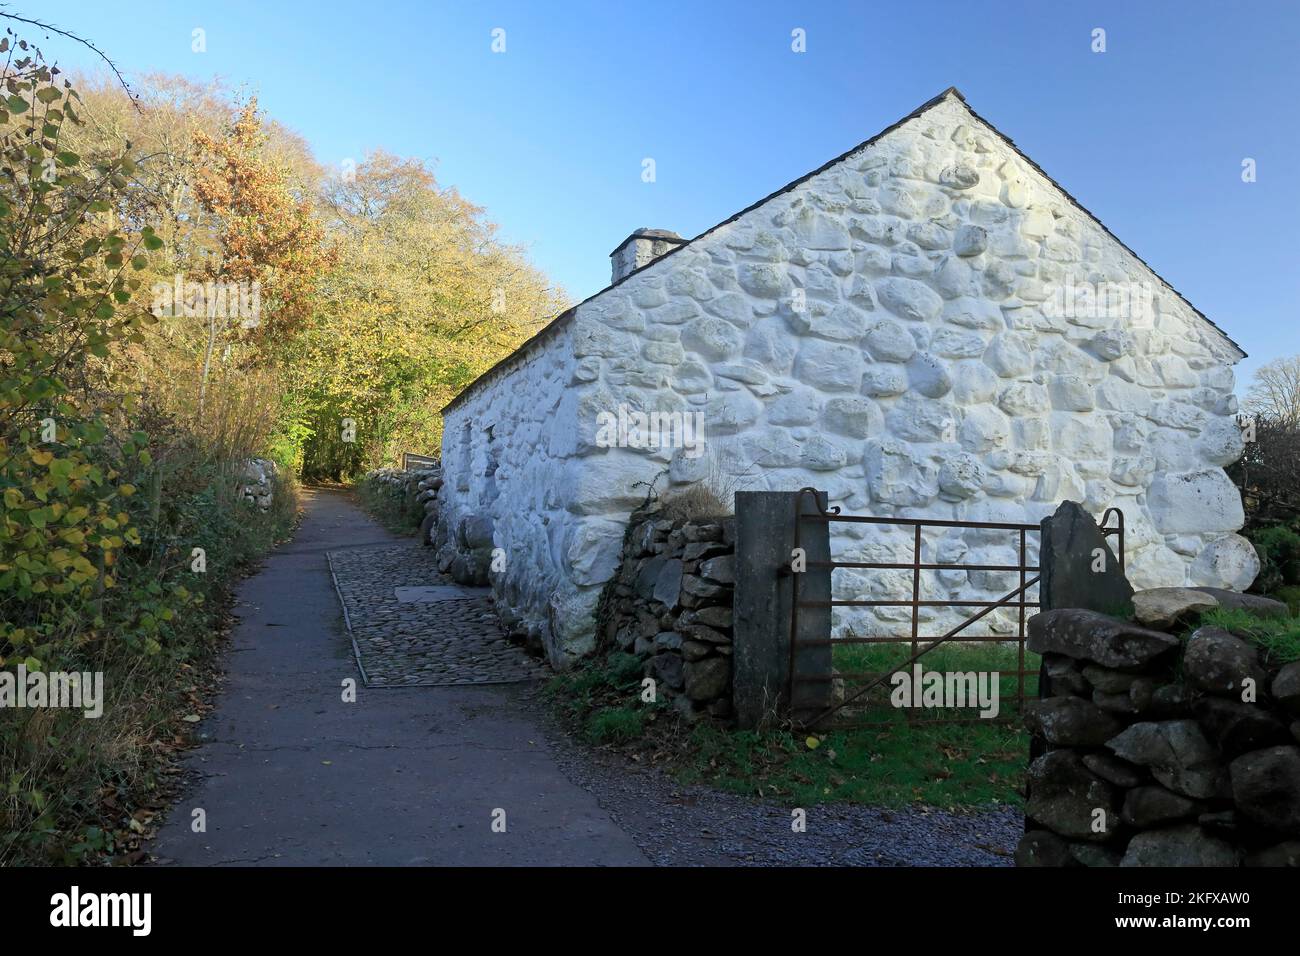 Llainfadyn Quarryman's Cottage, Musée national d'Histoire de St Fagans. Amgueddfa Werin Cymru. Pris en novembre 2022. Automne. Banque D'Images